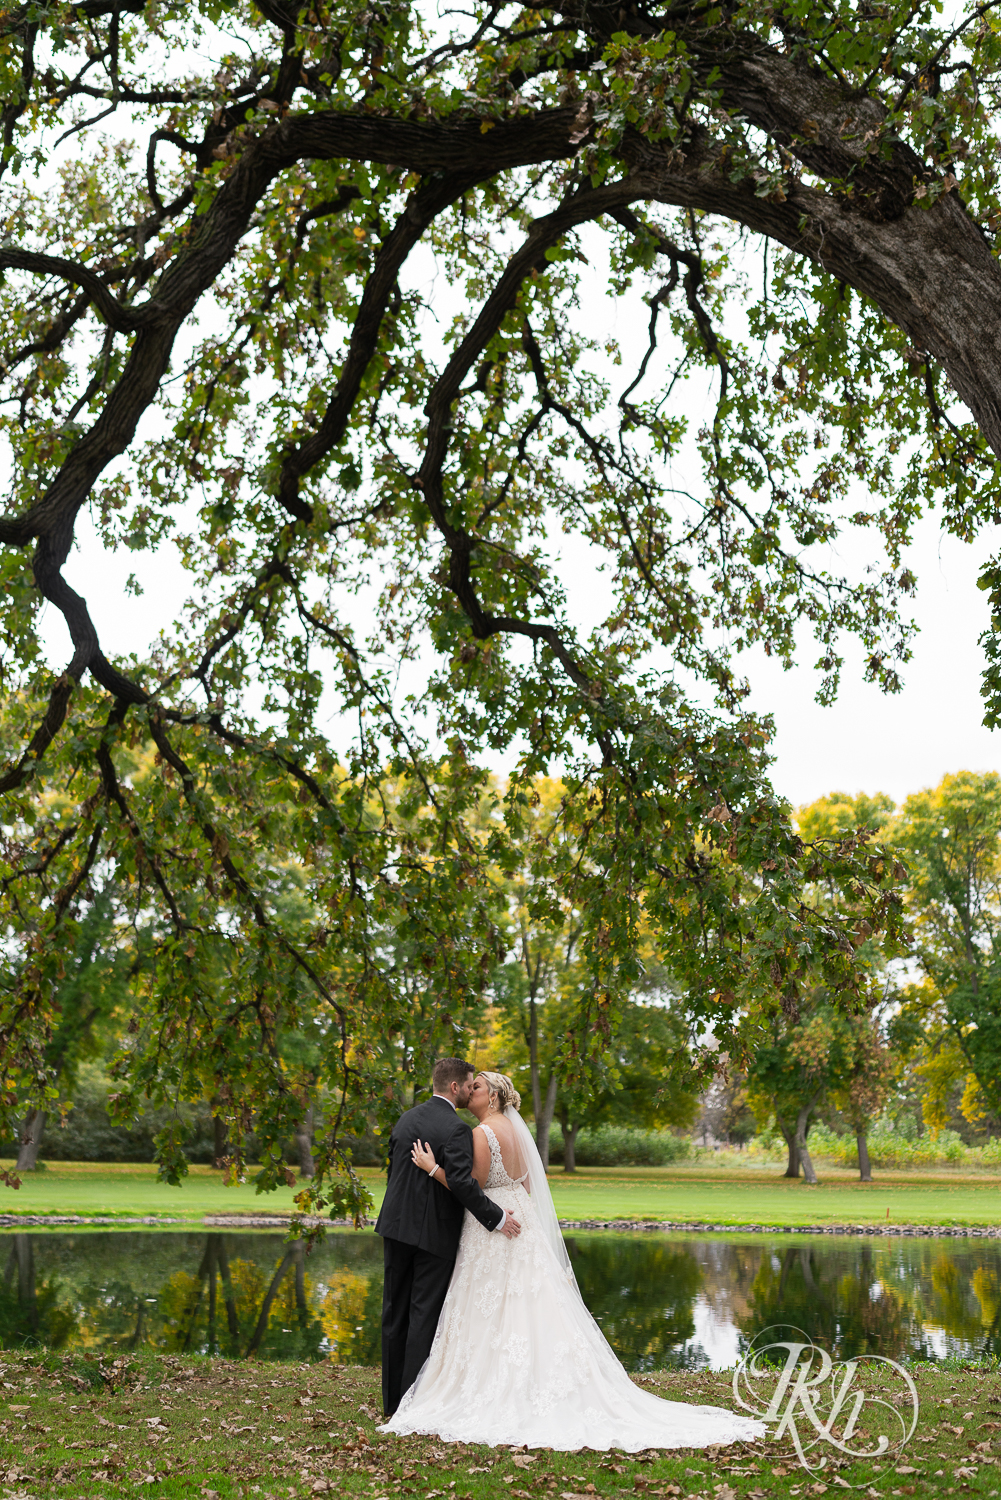 Bride and groom kiss under tree at Hastings Golf Club in Hastings, Minnesota.